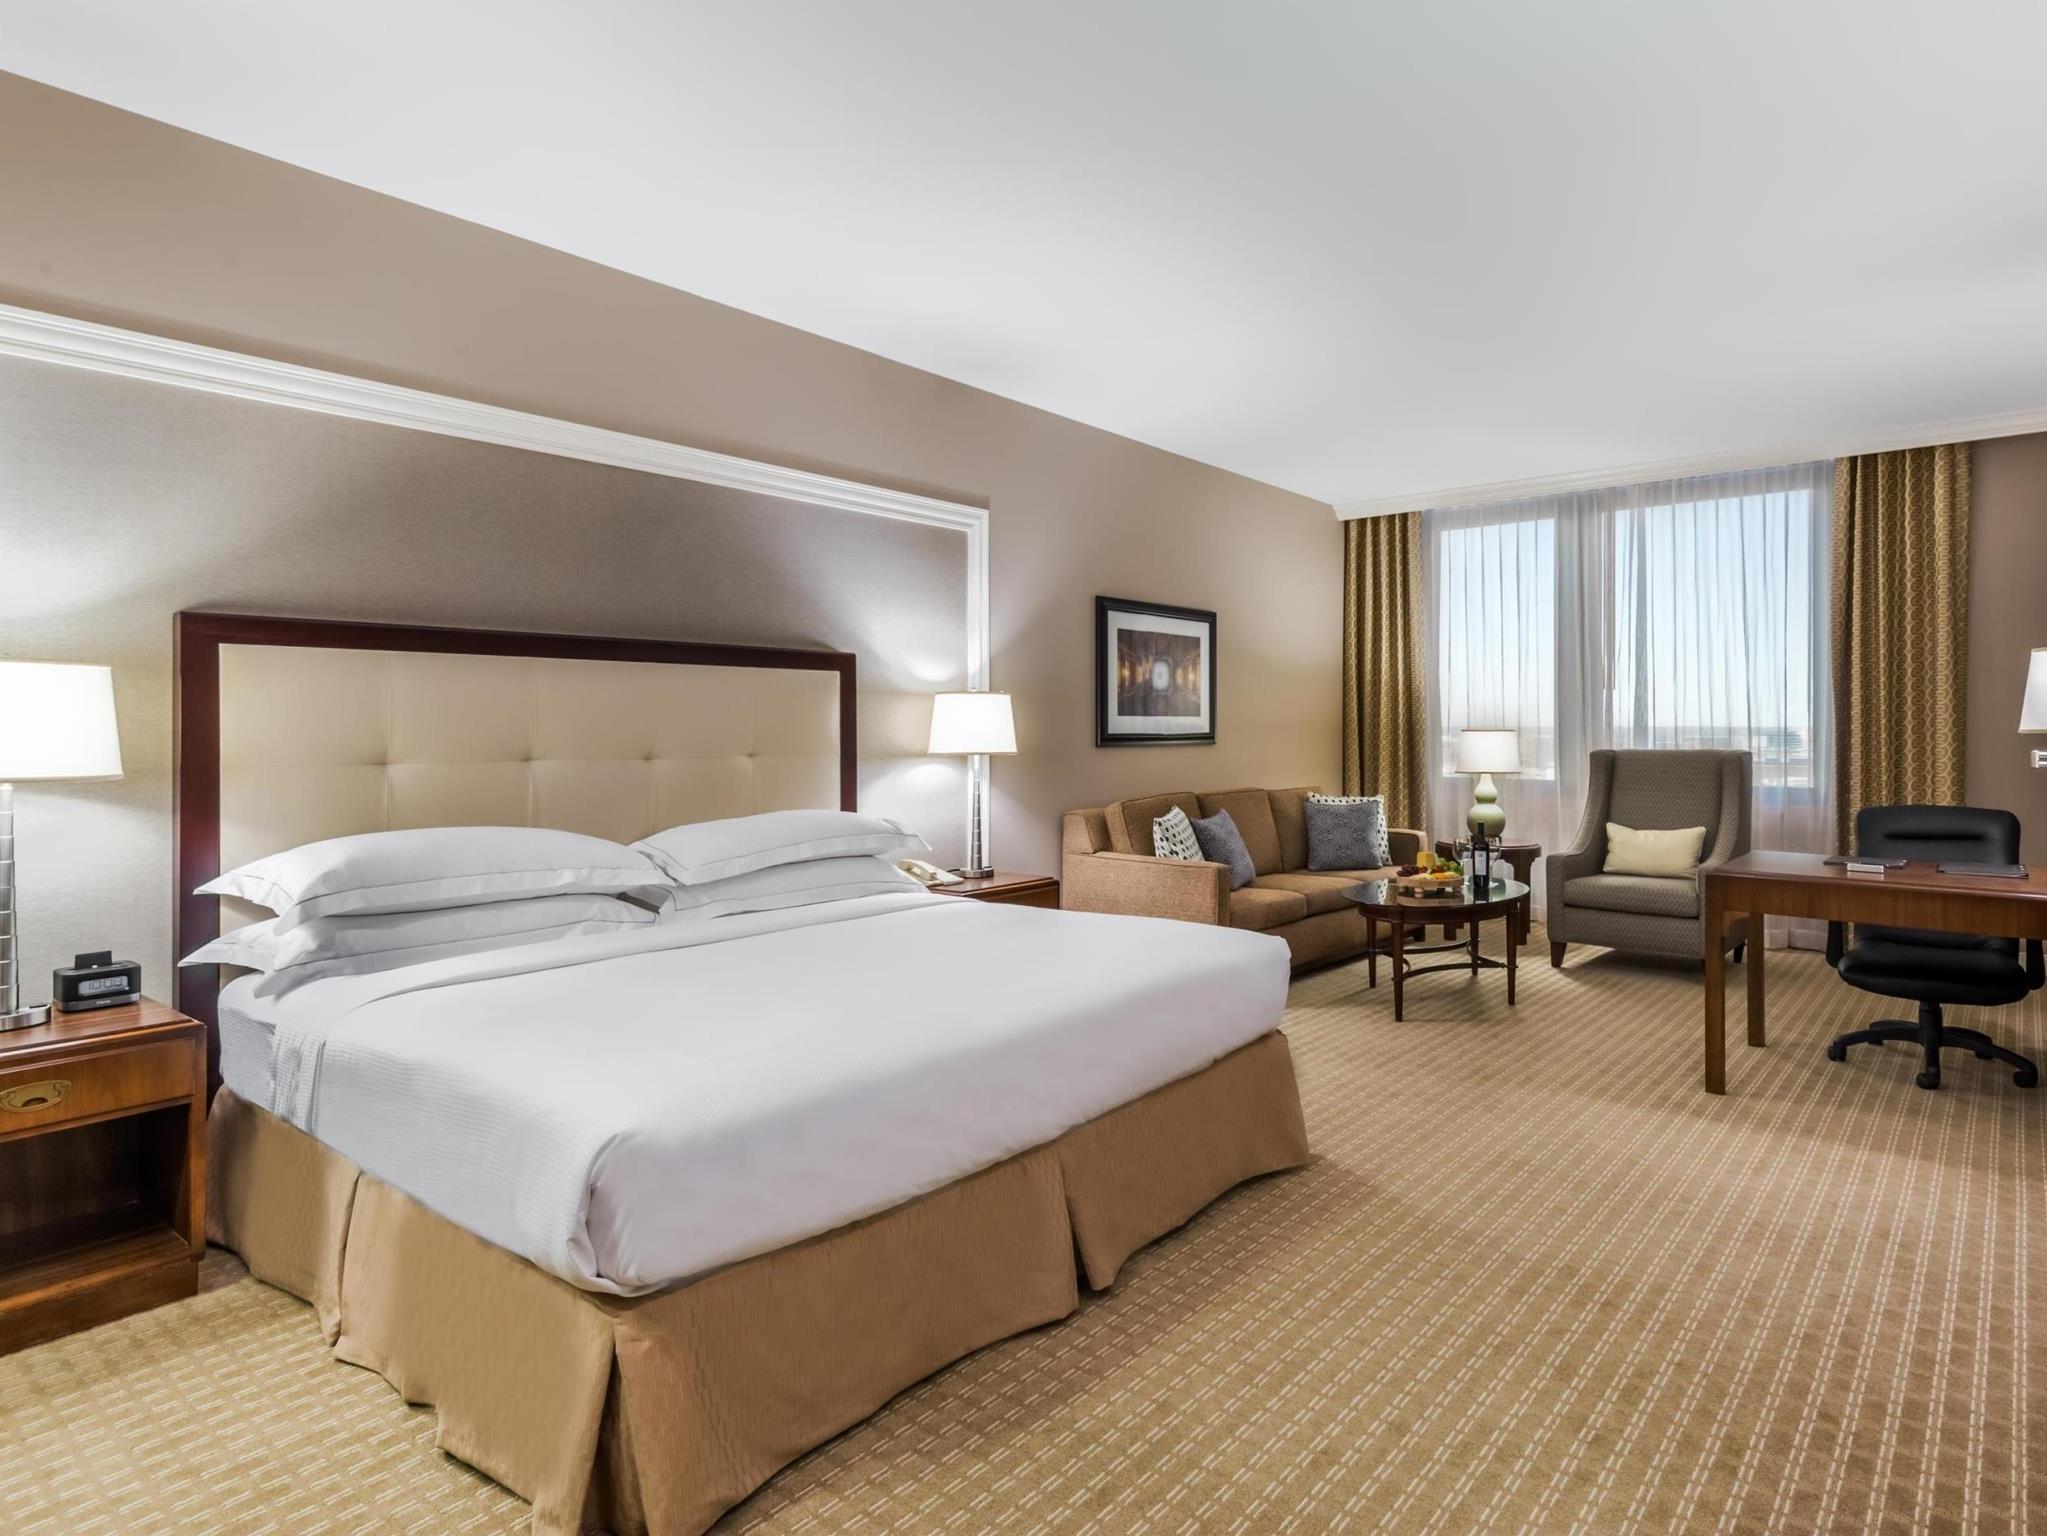 Hilton Indianapolis Hotel & Suites 写真